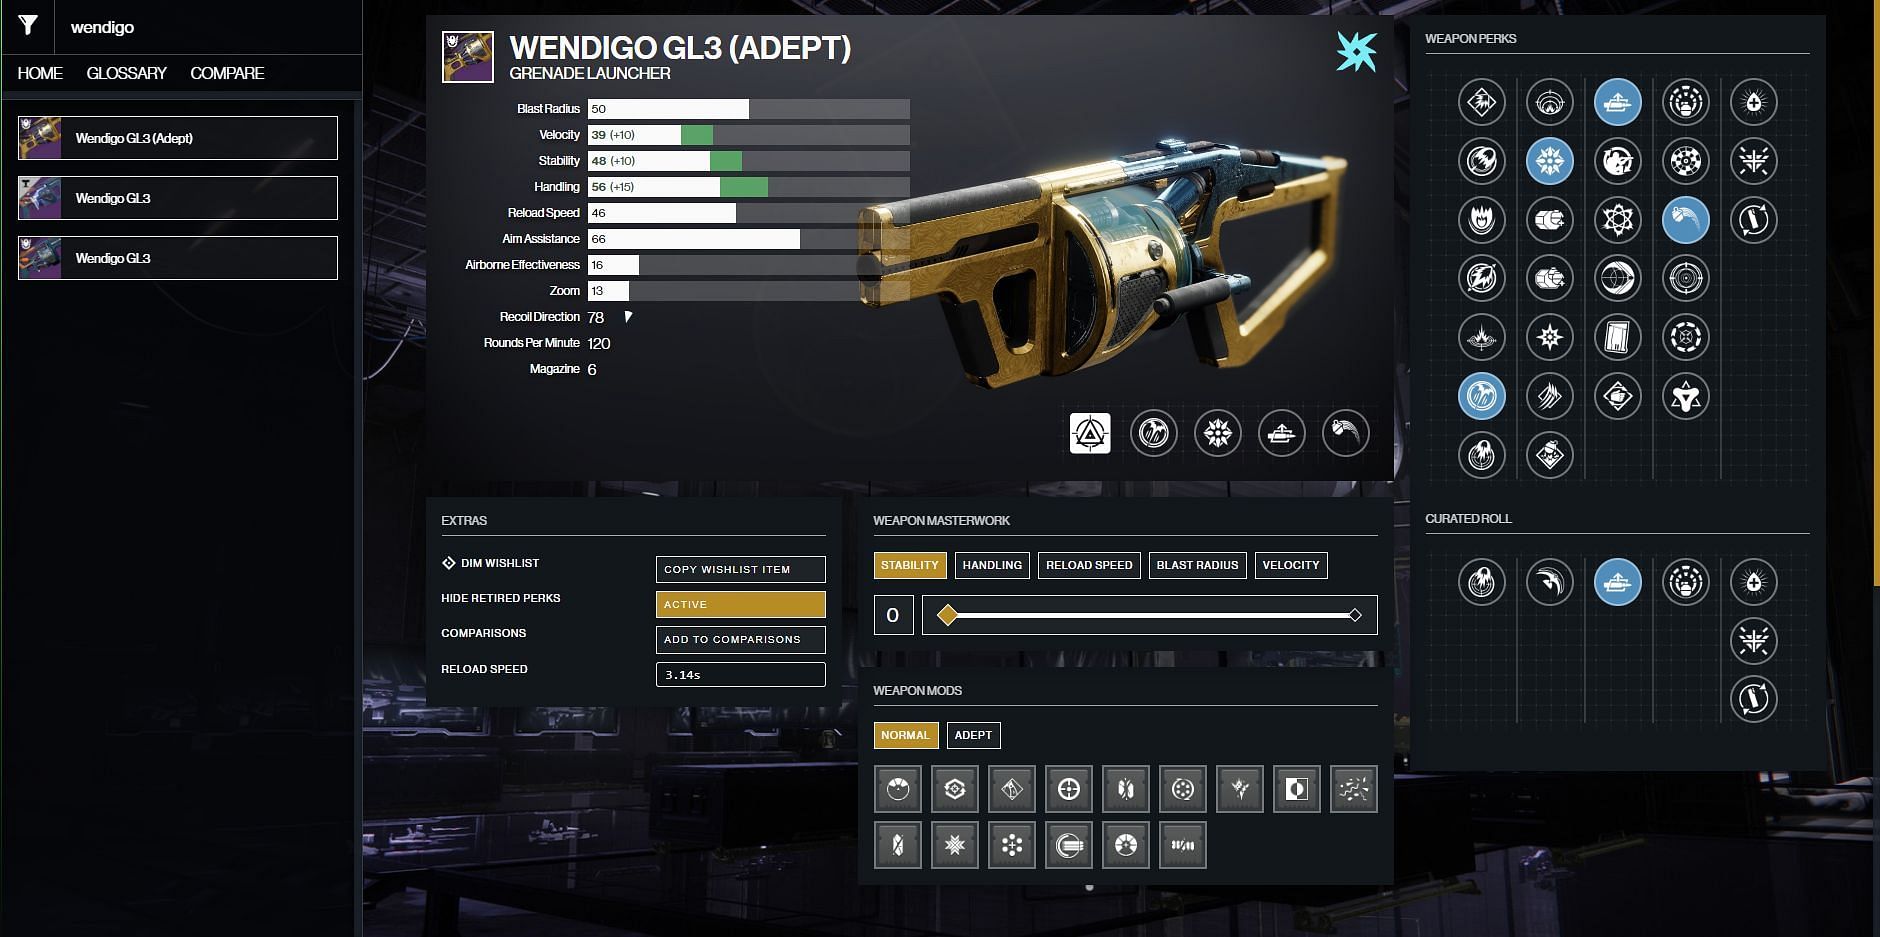 Wendigo GL3 Grenade Launcher (Image via Destiny 2 Gunsmith)